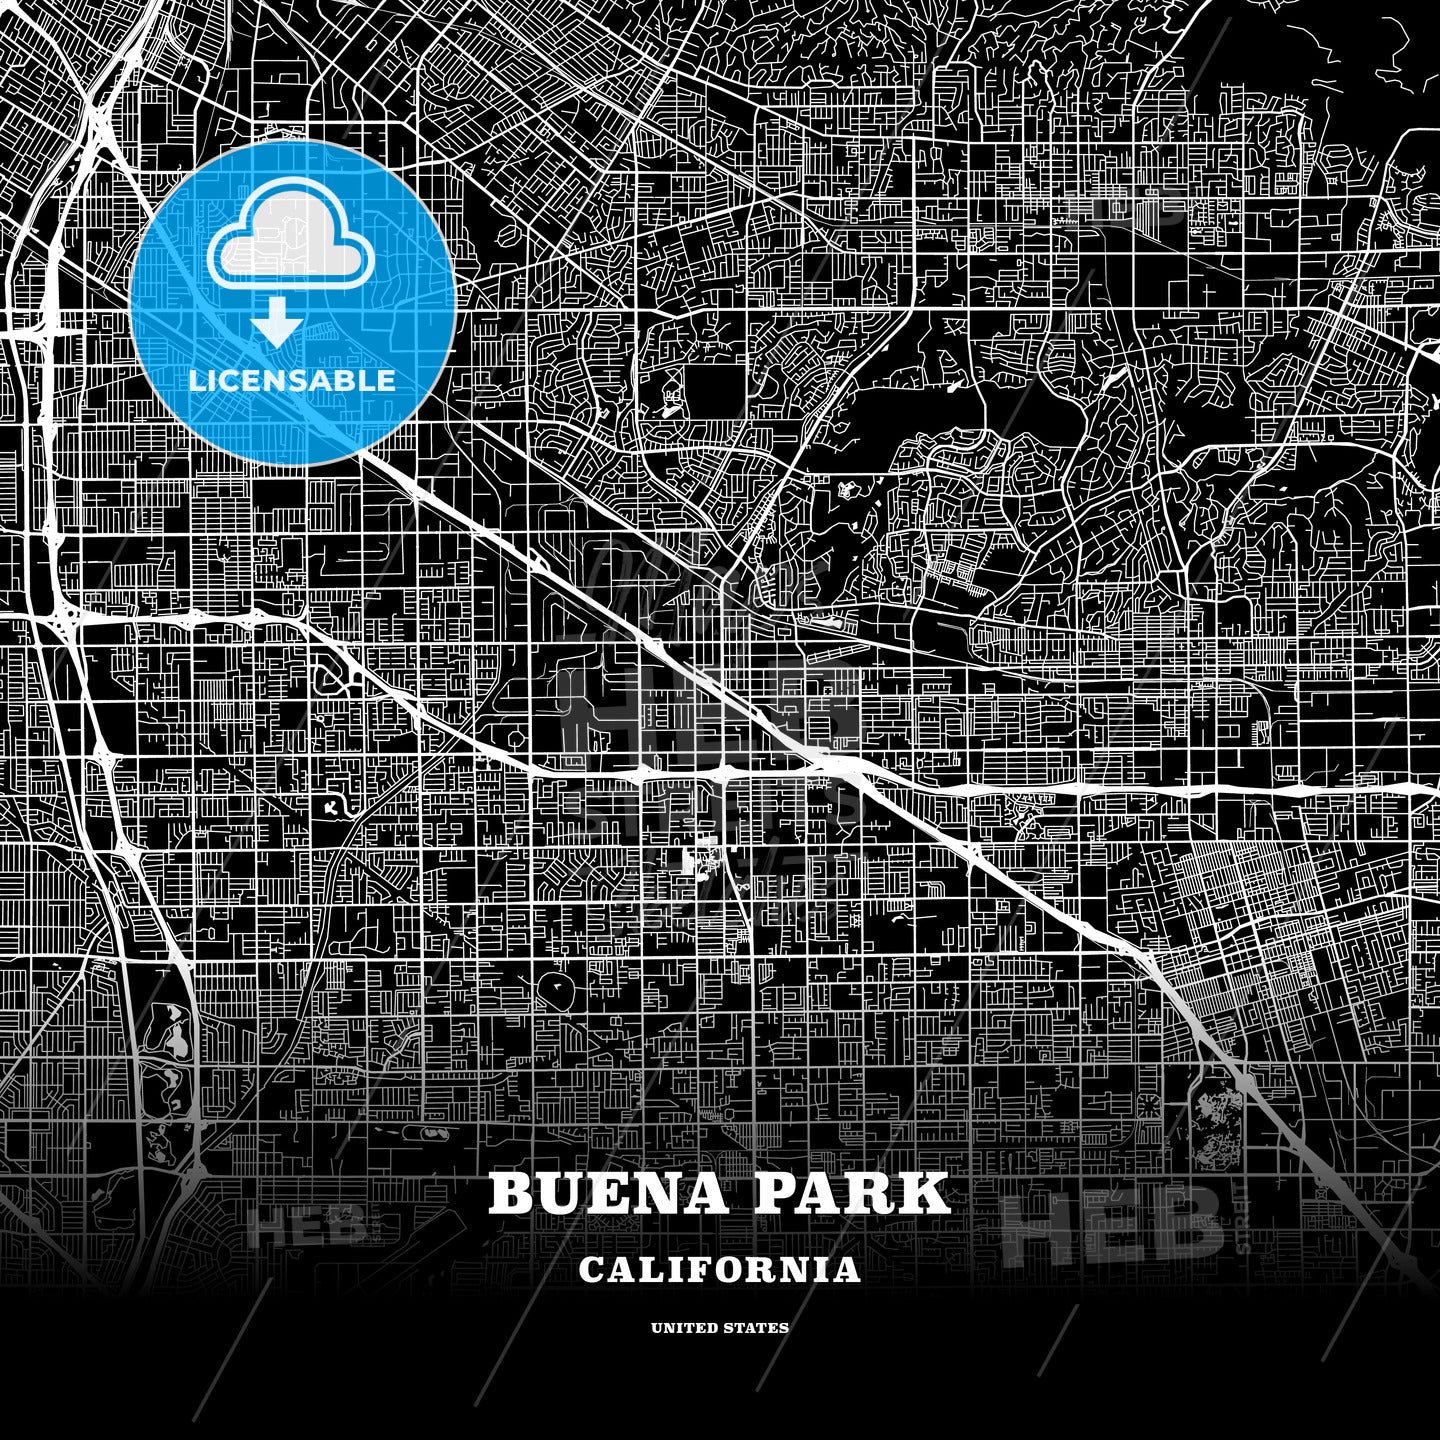 Buena Park, California, USA map